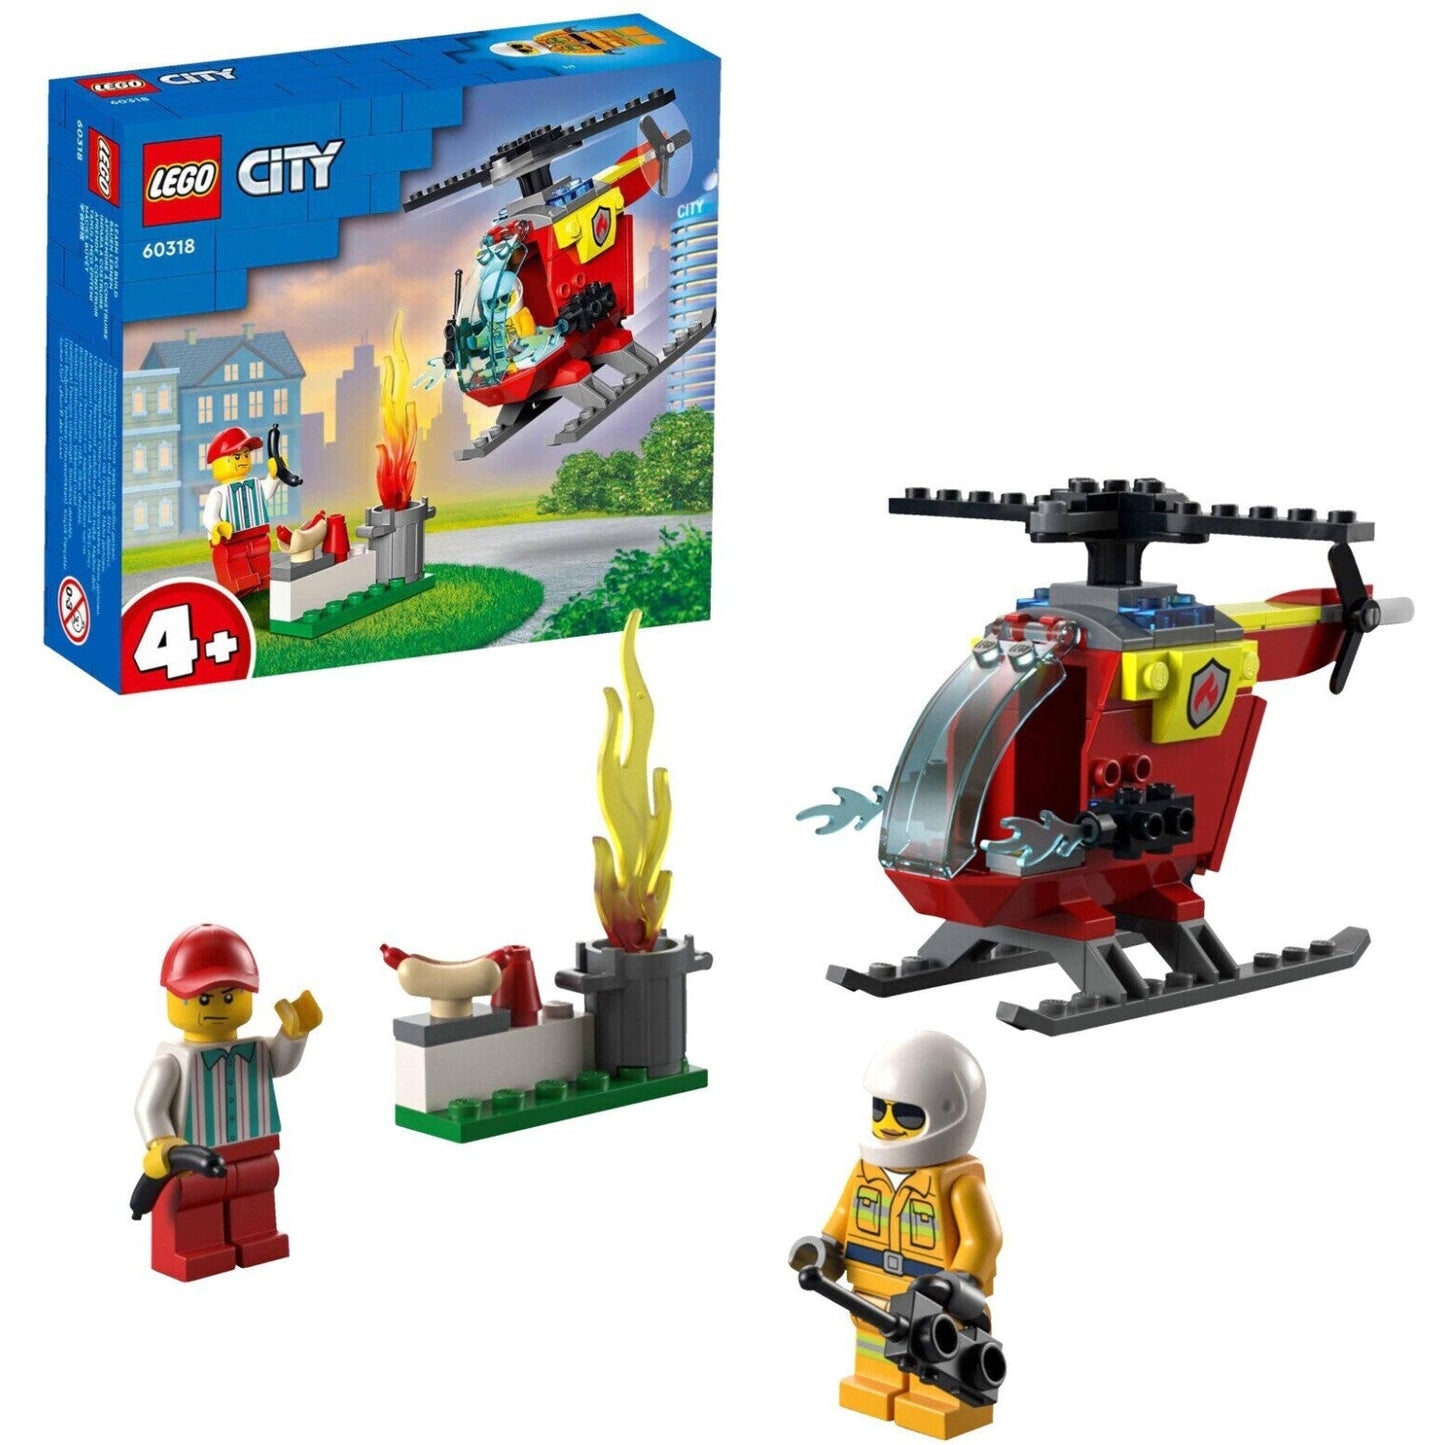 LEGO 60318 City Feuerwehr-Hubschrauber ab 4+